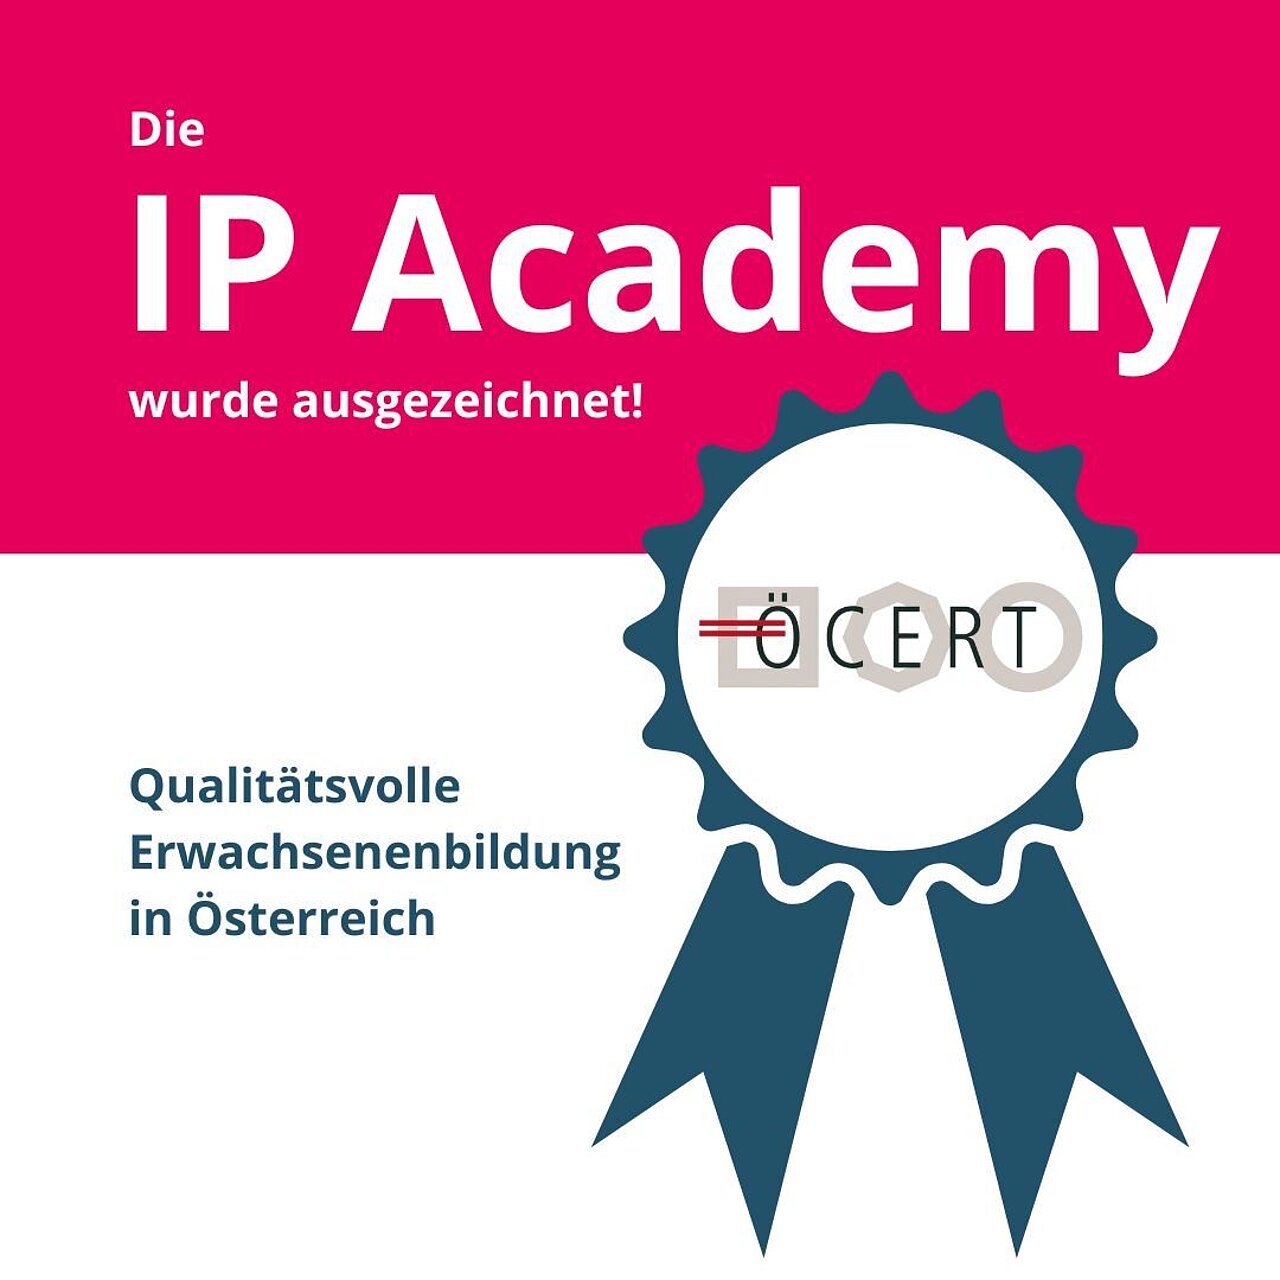 Die IP Academy wurde ausgezeichnet! Qualitätsvolle Erwachsenenbildung in Österreich